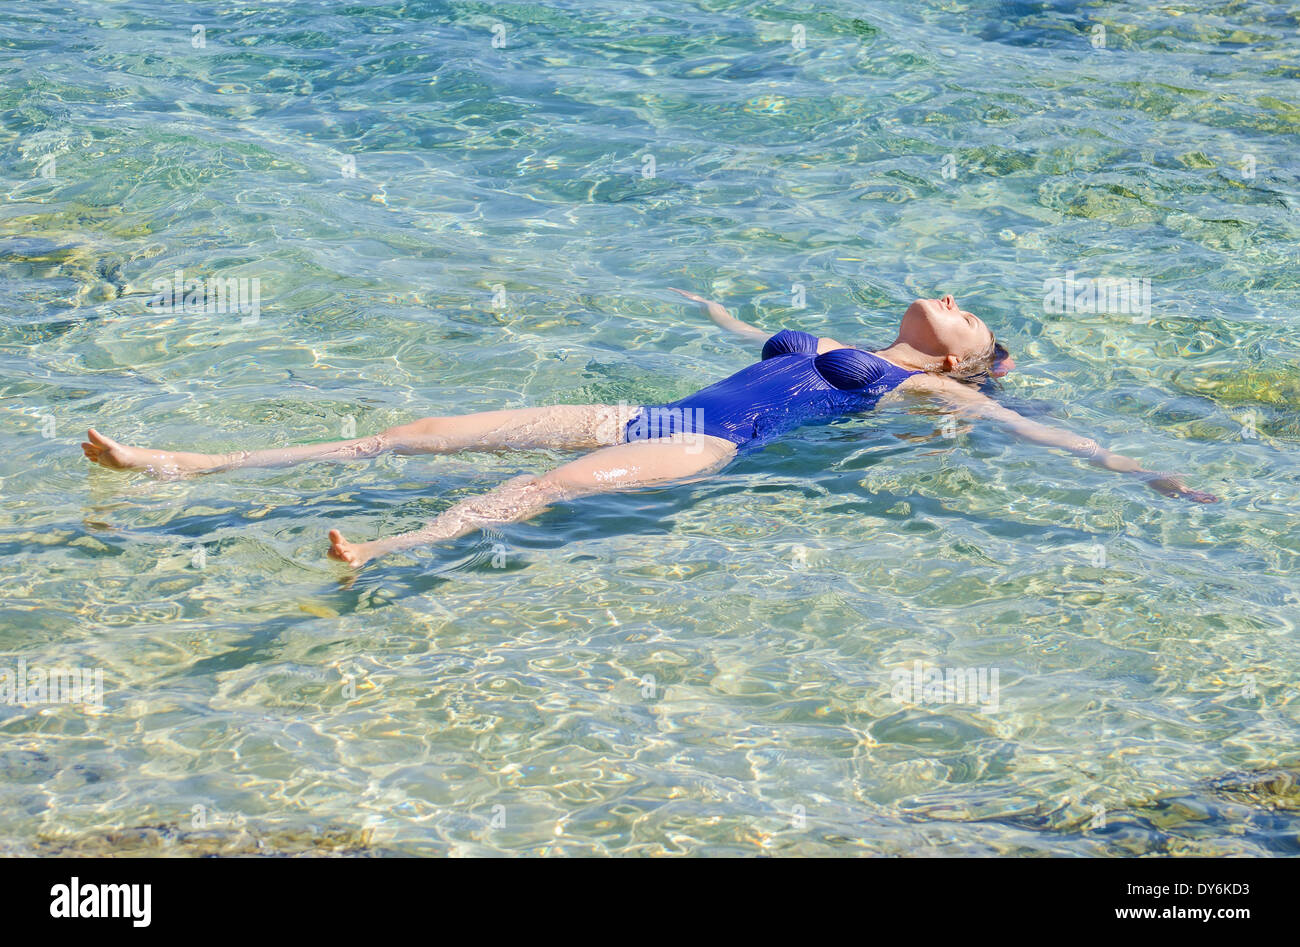 Hübsche Frau im transparenten türkisfarbenen Meer zu schwimmen. Stockfoto